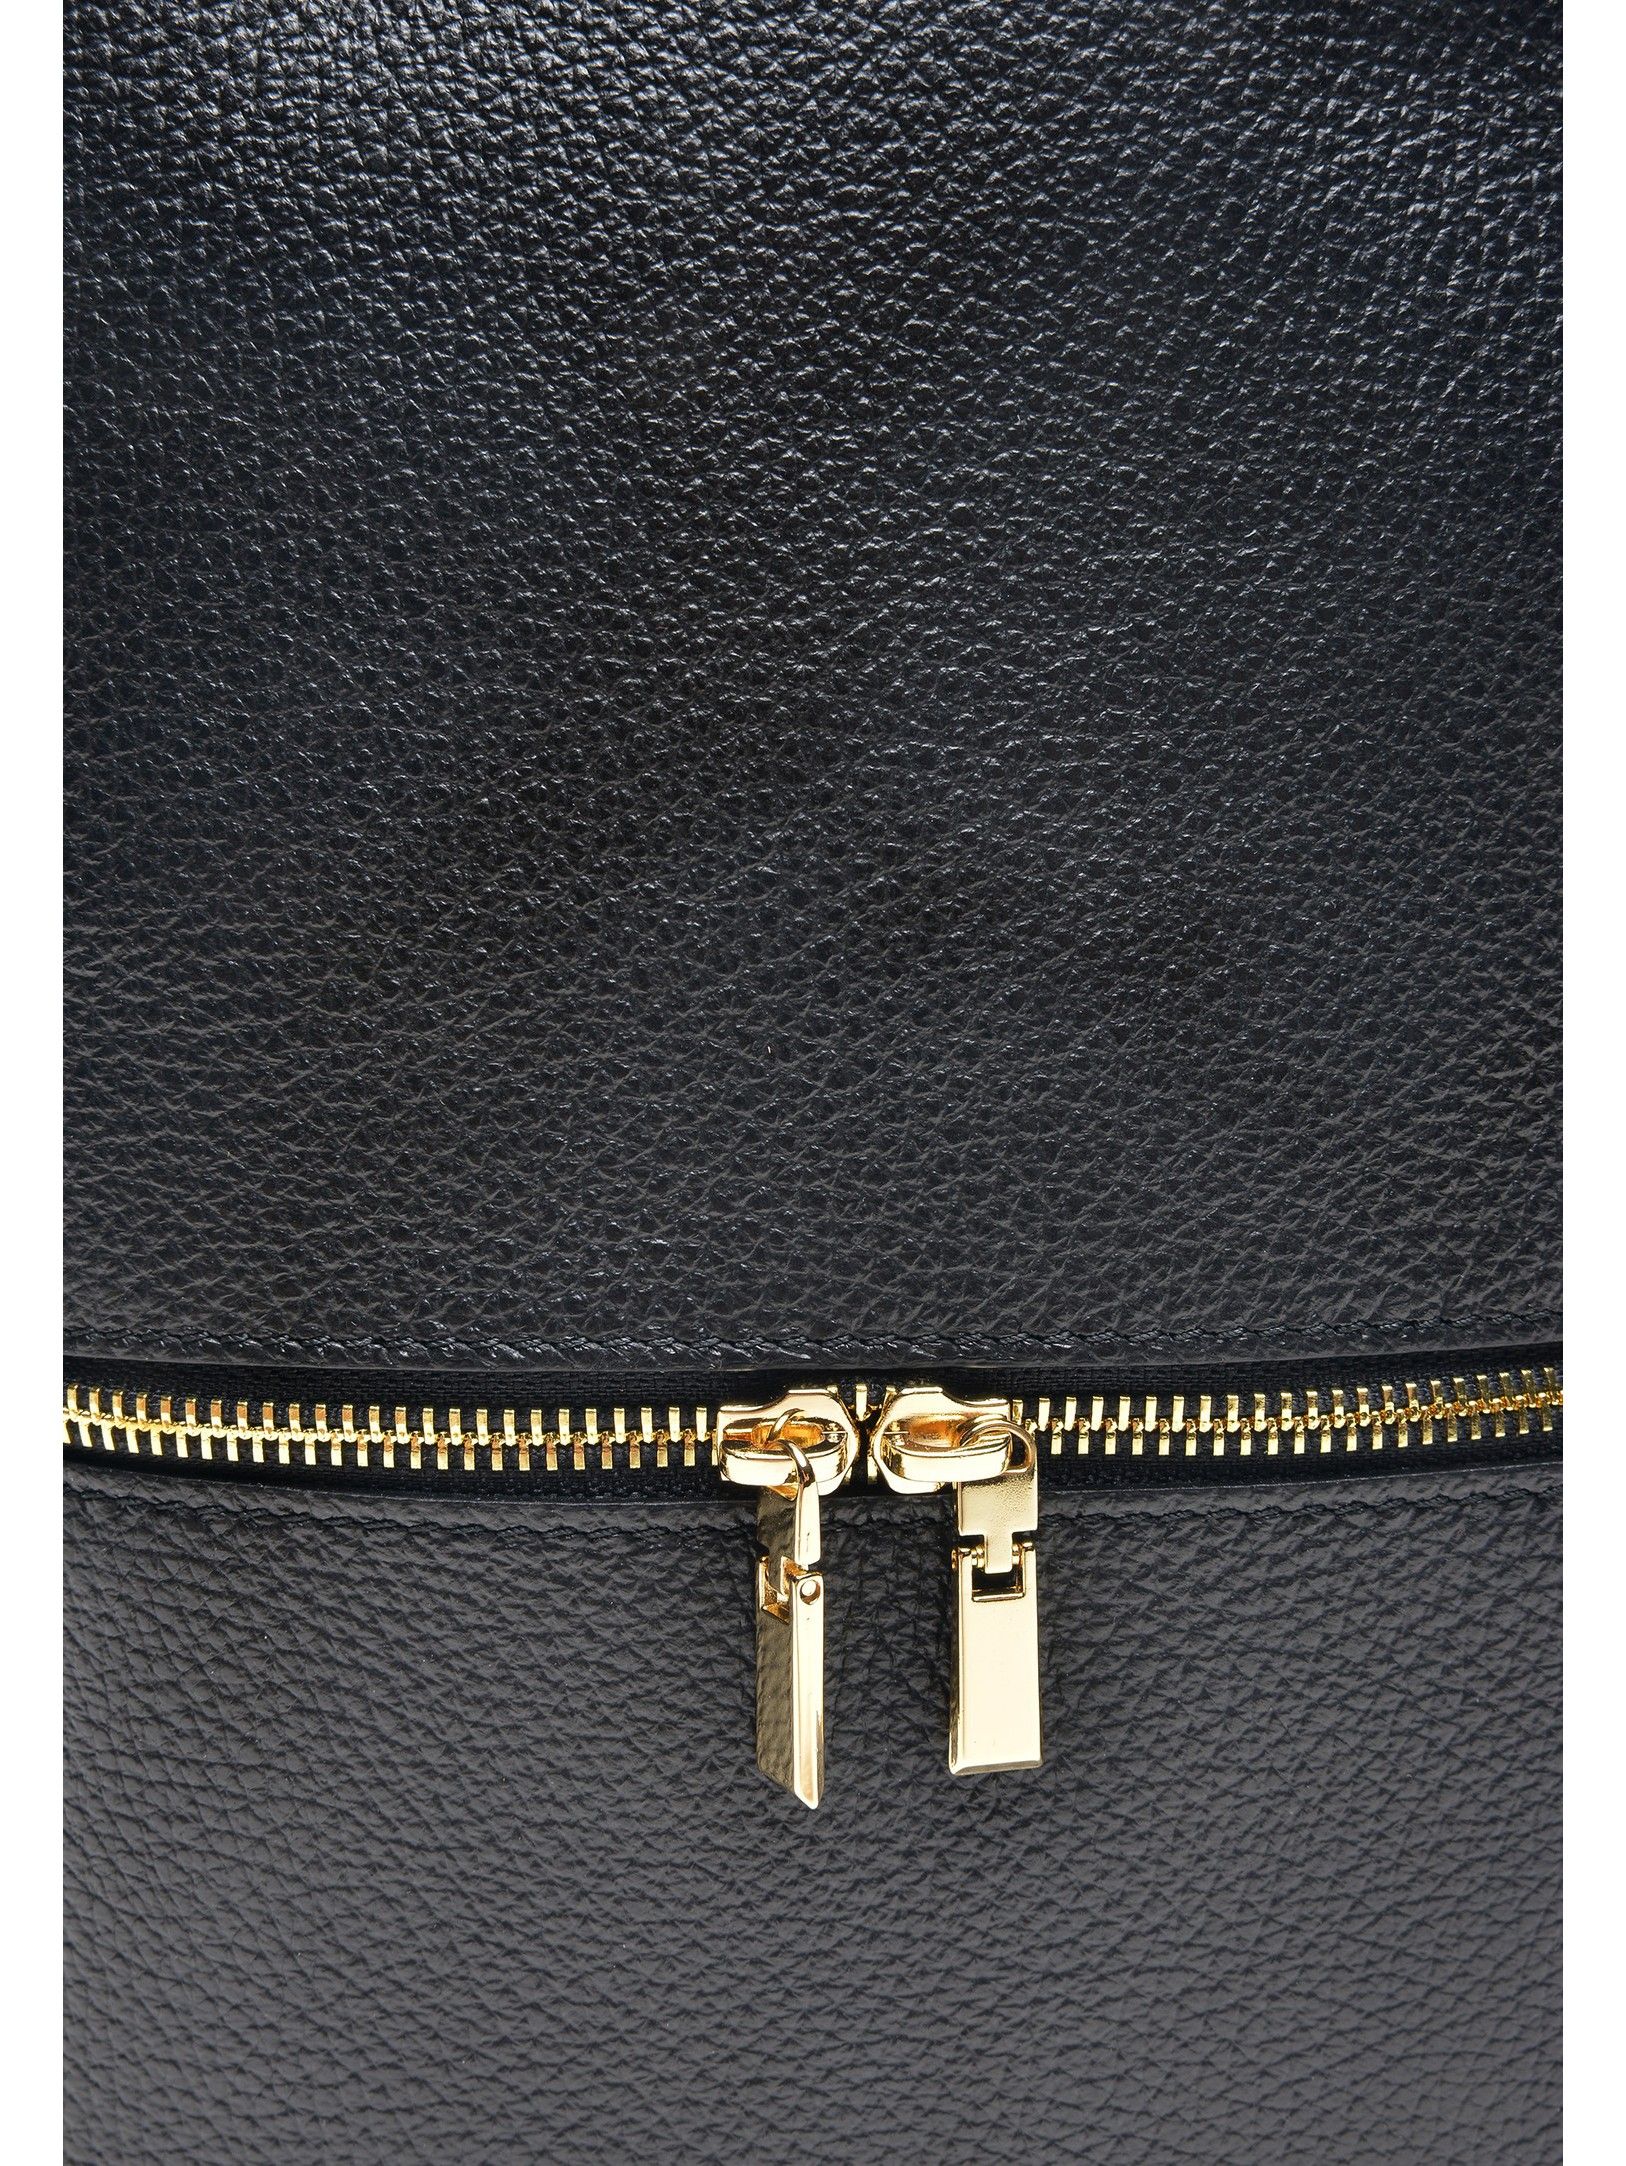 Backpack
100% cow leather
Top zip closure
Front zip pocket
Dimensions (L) 29x23x10 cm
Handle: 19.5 cm
Shoulder strap: 80cm x 2